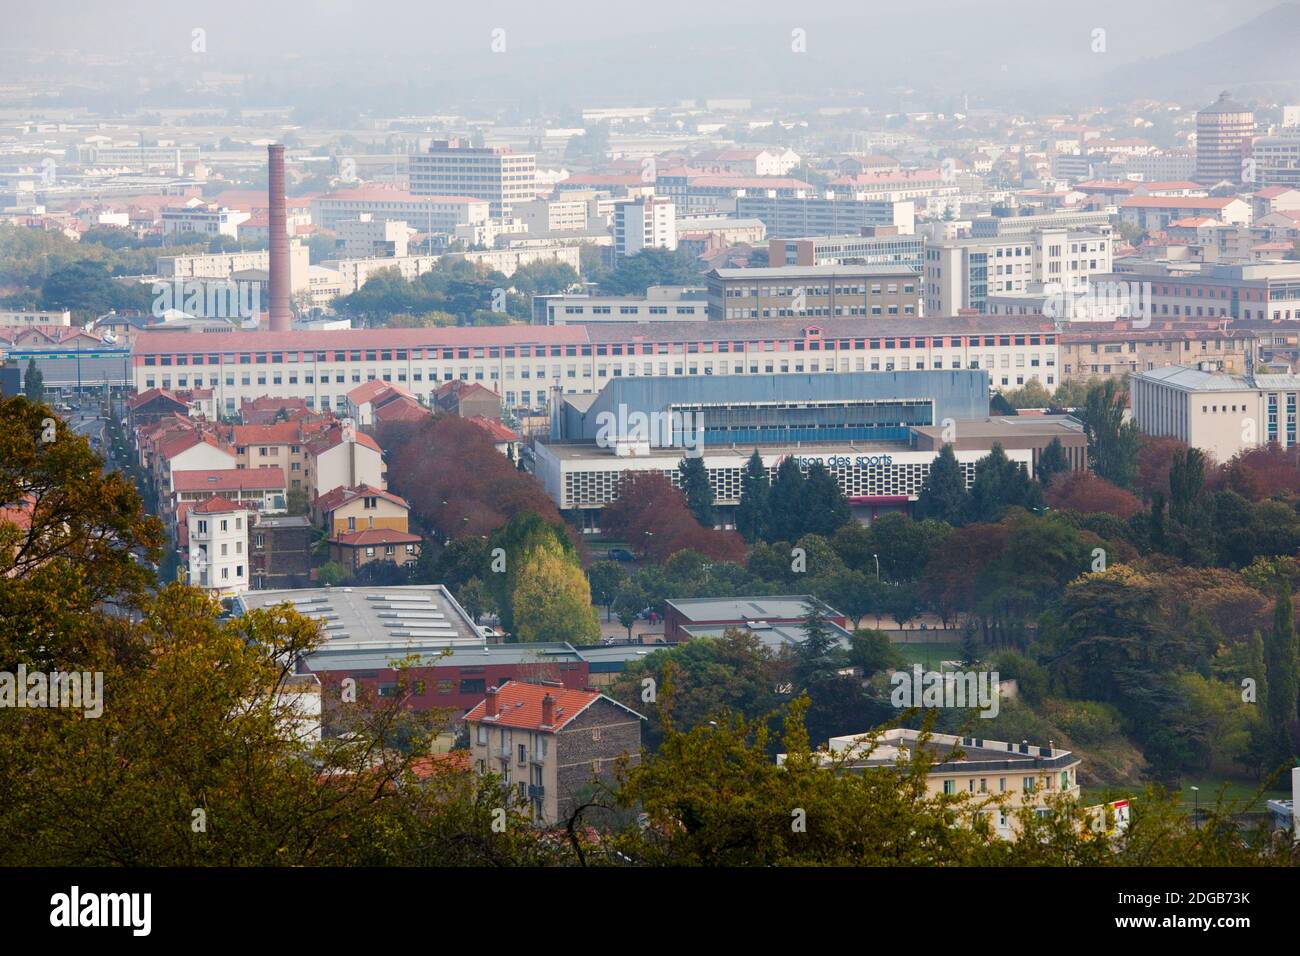 Vue aérienne de la ville et de l'usine de pneus Michelin depuis le Parc de Montjuzet, Clermont-Ferrand, Auvergne, Puy-de-Dome, France Banque D'Images